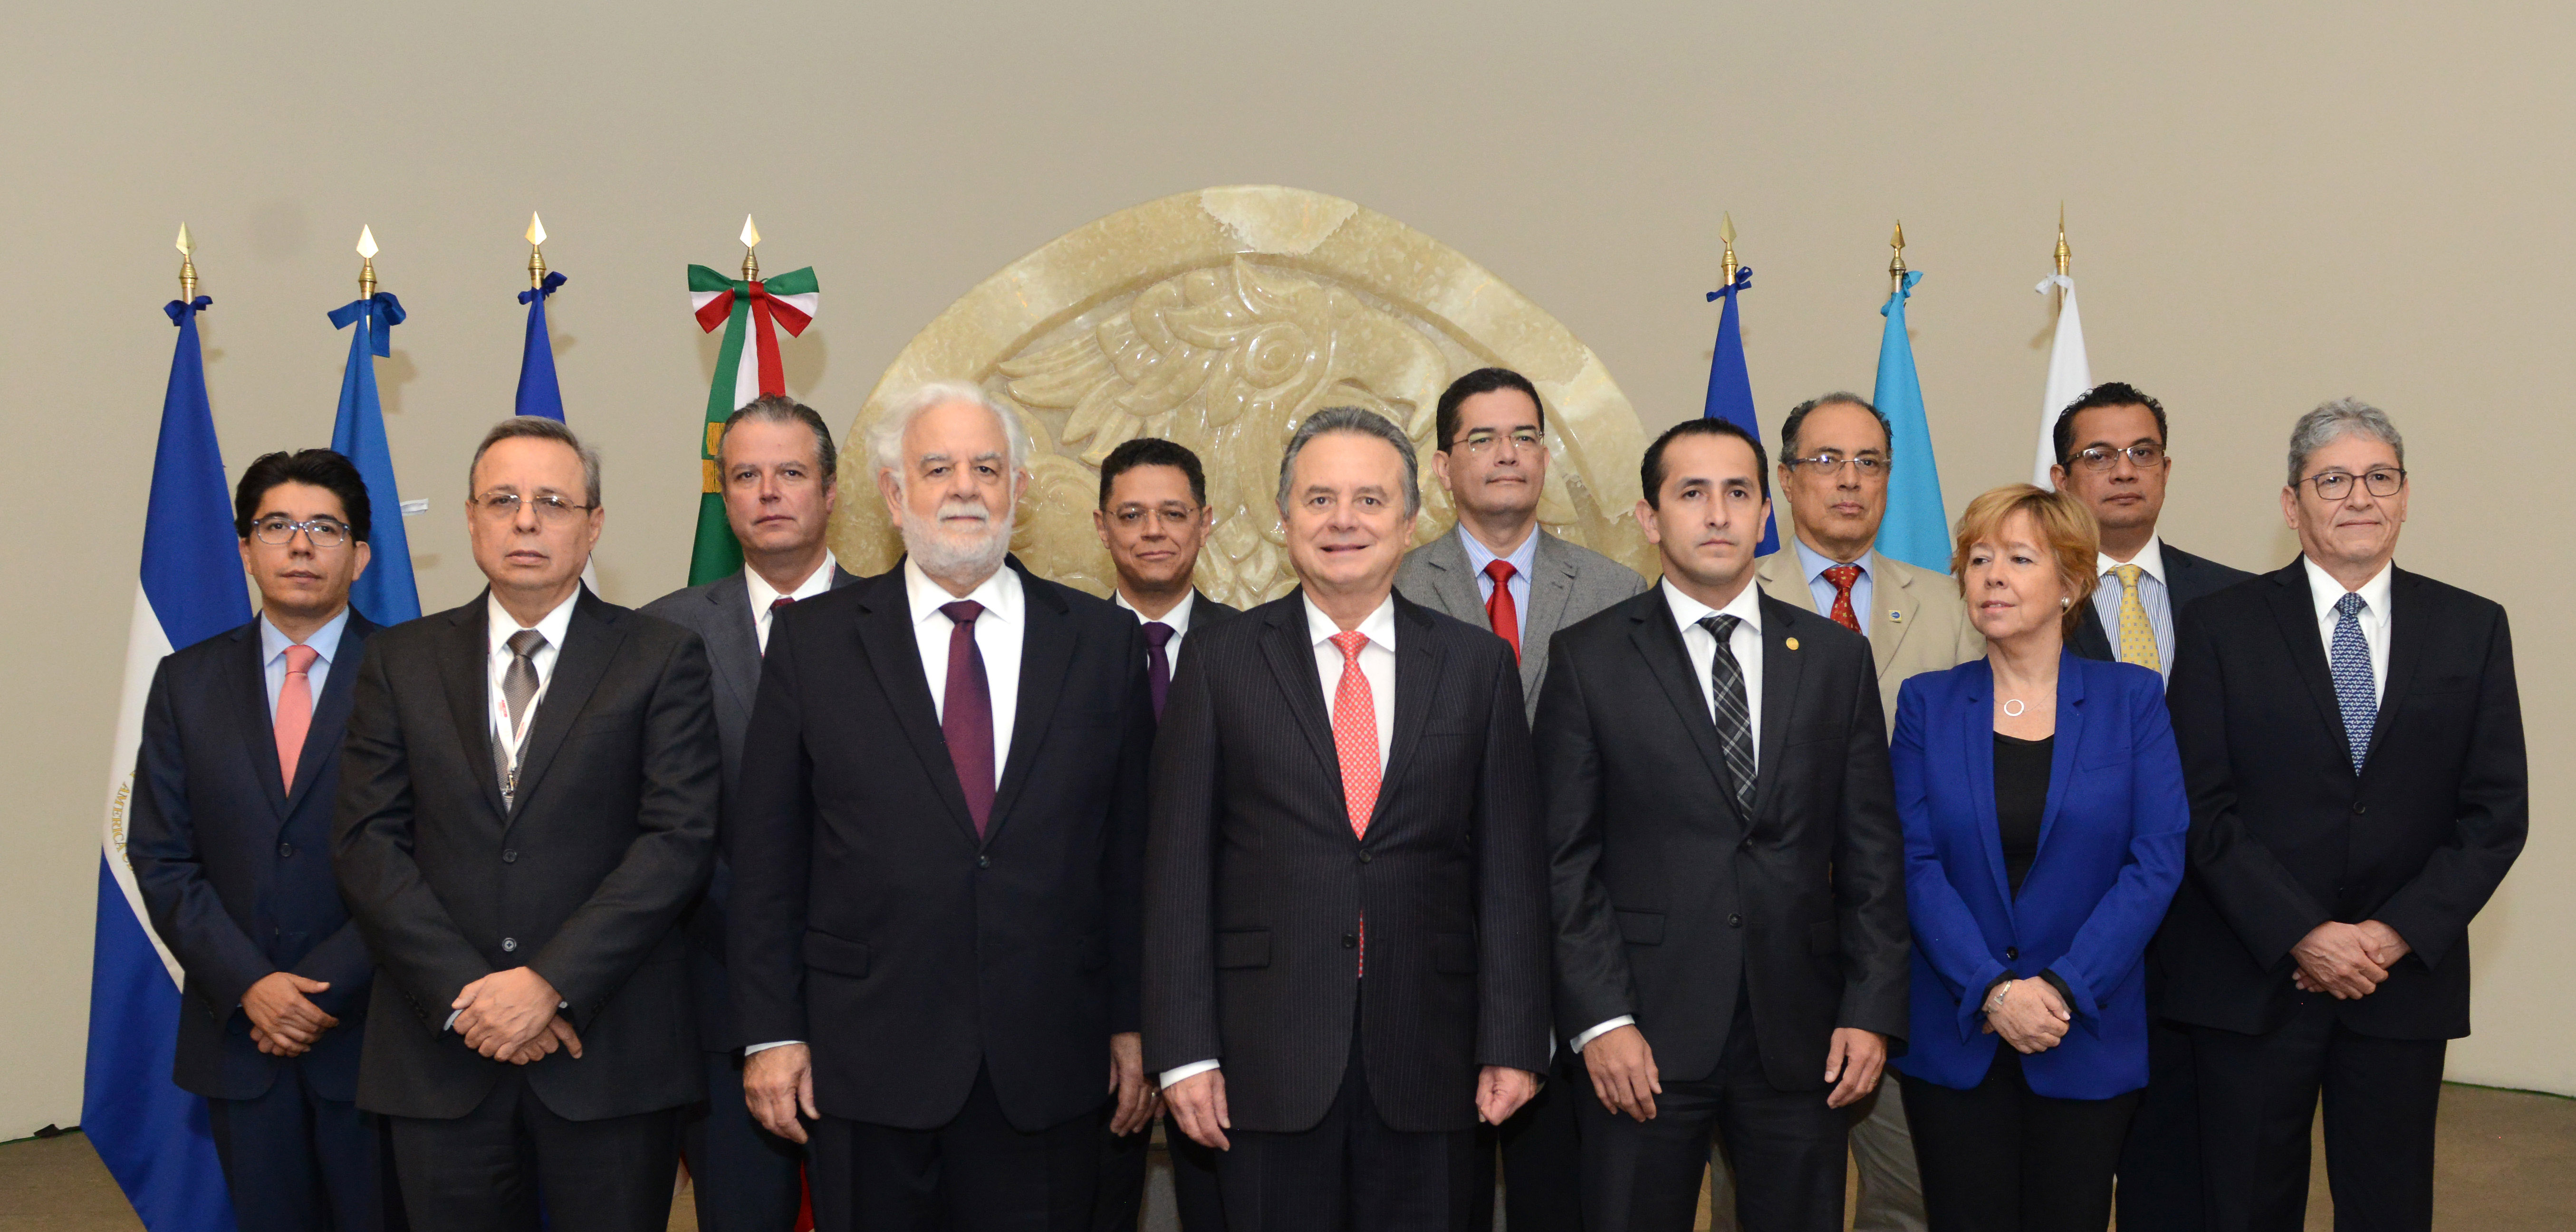 La creación de la CIEMS fue anunciada el pasado 4 de mayo en la Cumbre de Seguridad Energética EE.UU., Centroamérica y El Caribe. Por parte de México está conformada por autoridades de SENER, CENACE, CFE y AMEXCID, quien acompaña este proceso con el fin de dar seguimiento a los compromisos adquiridos en materia de integración eléctrica derivados de las Cumbres de Jefes de Estado y de Gobierno del Mecanismo de Diálogo y Concertación de Tuxtla.